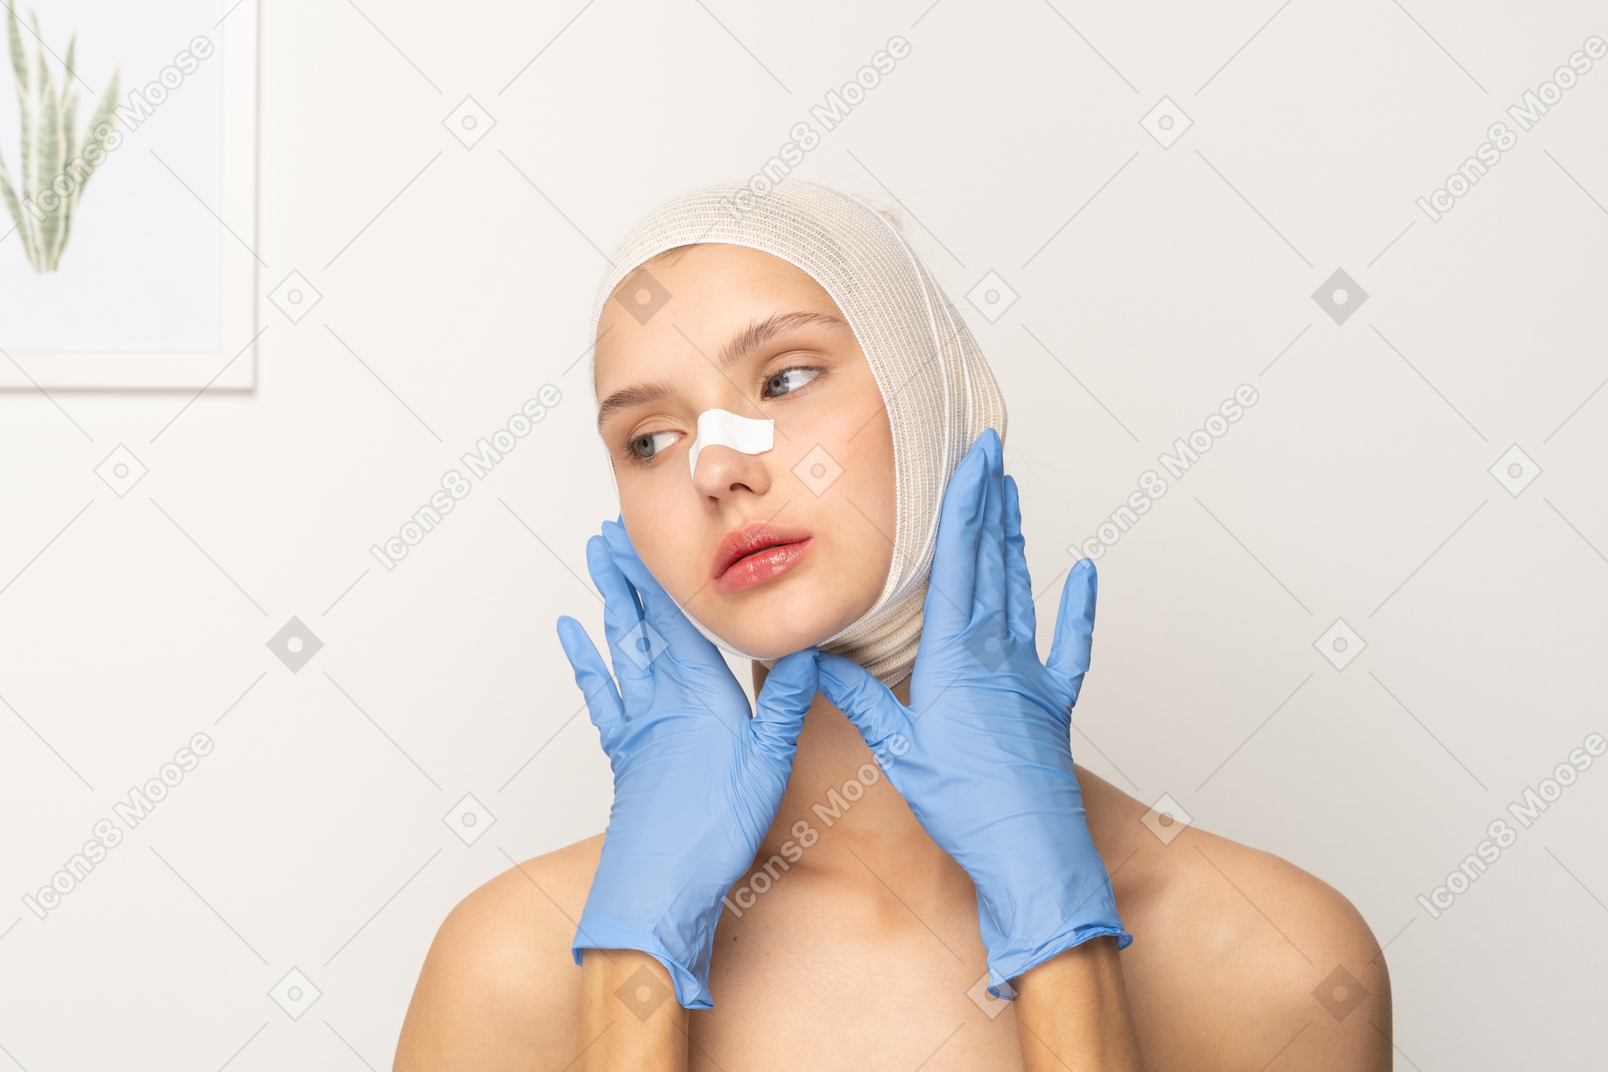 Пациентка с руками в перчатках, обрамляющими лицо